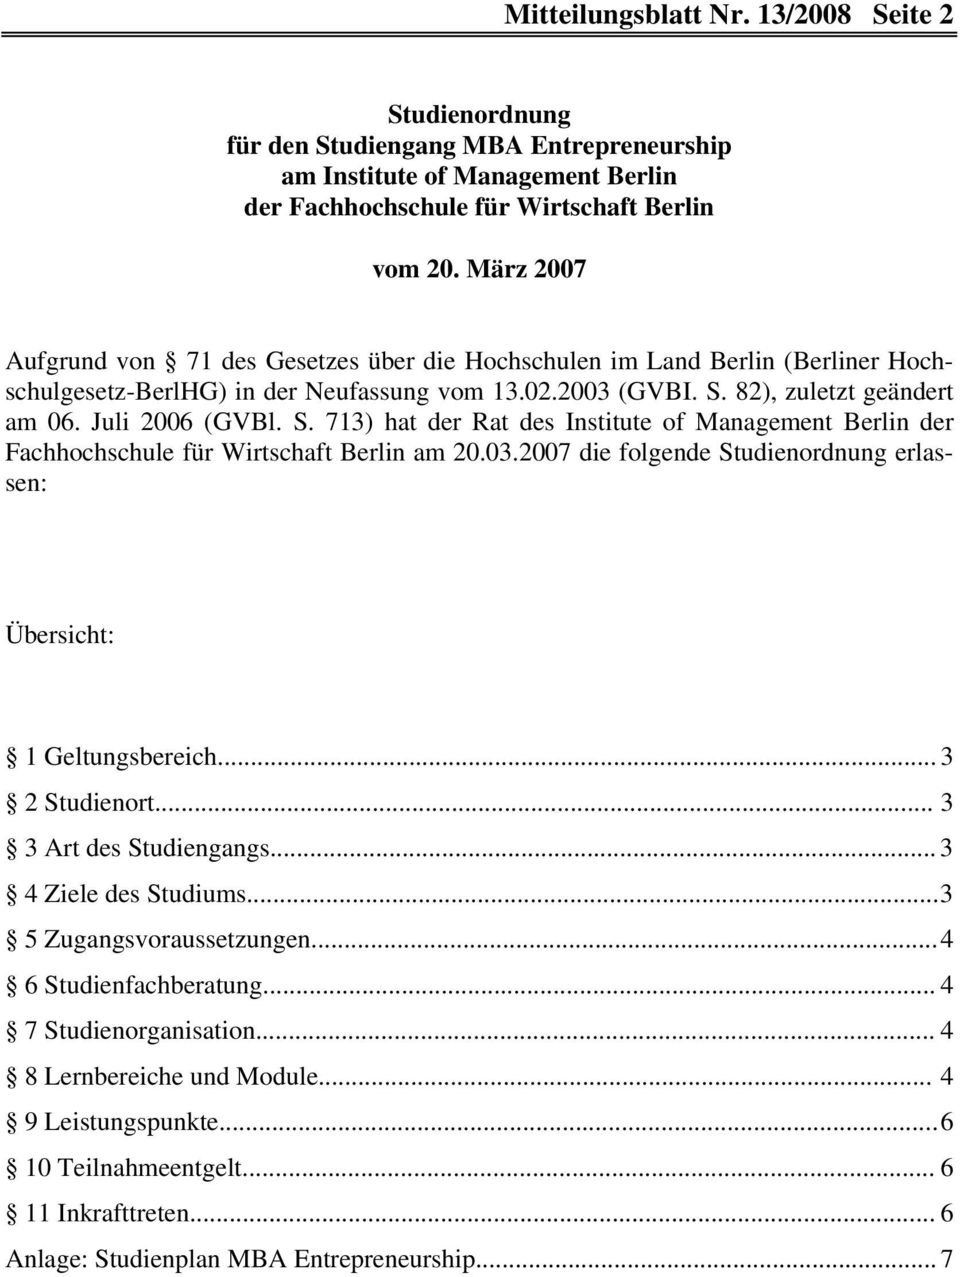 82), zuletzt geändert am 06. Juli 2006 (GVBl. S. 713) hat der Rat des Institute of Management Berlin der Fachhochschule für Wirtschaft Berlin am 20.03.